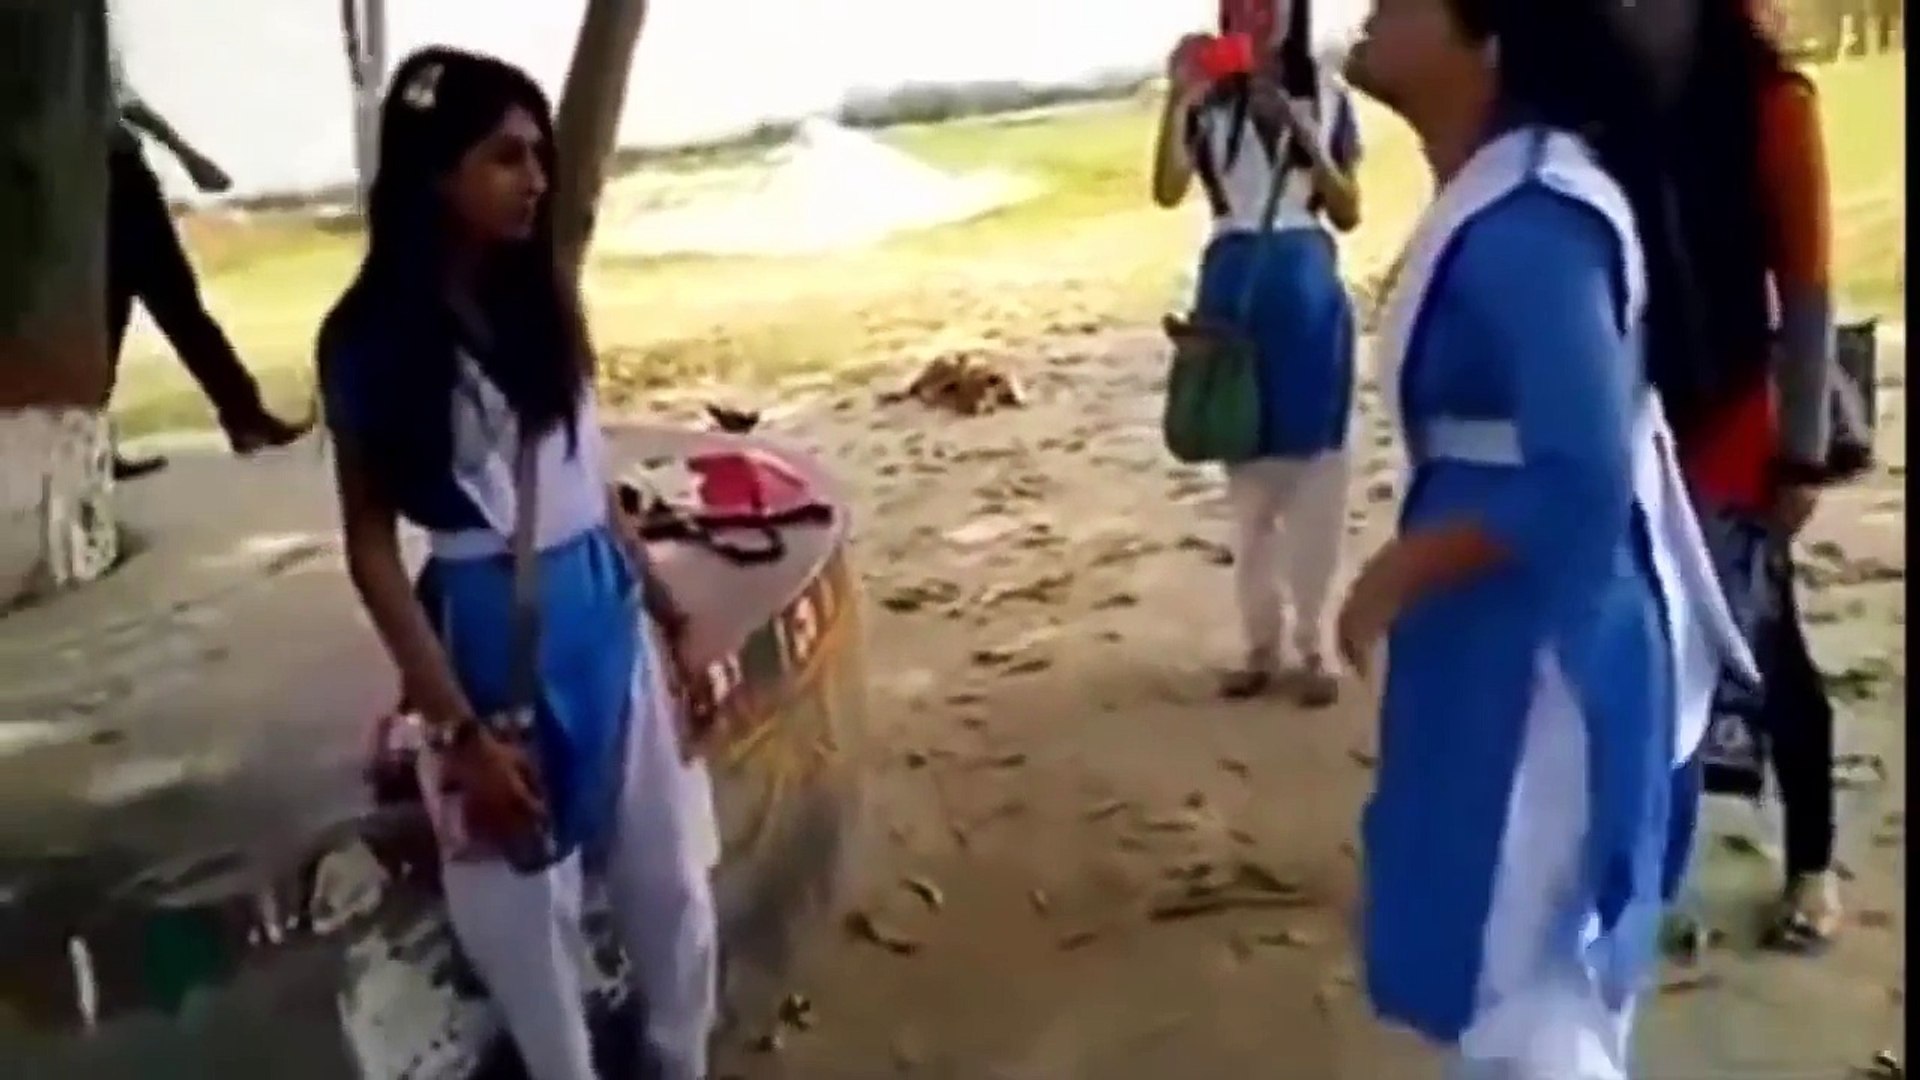 ⁣Desi Hot Girls Fighting in School - New Video 2016 Recent Hot Video